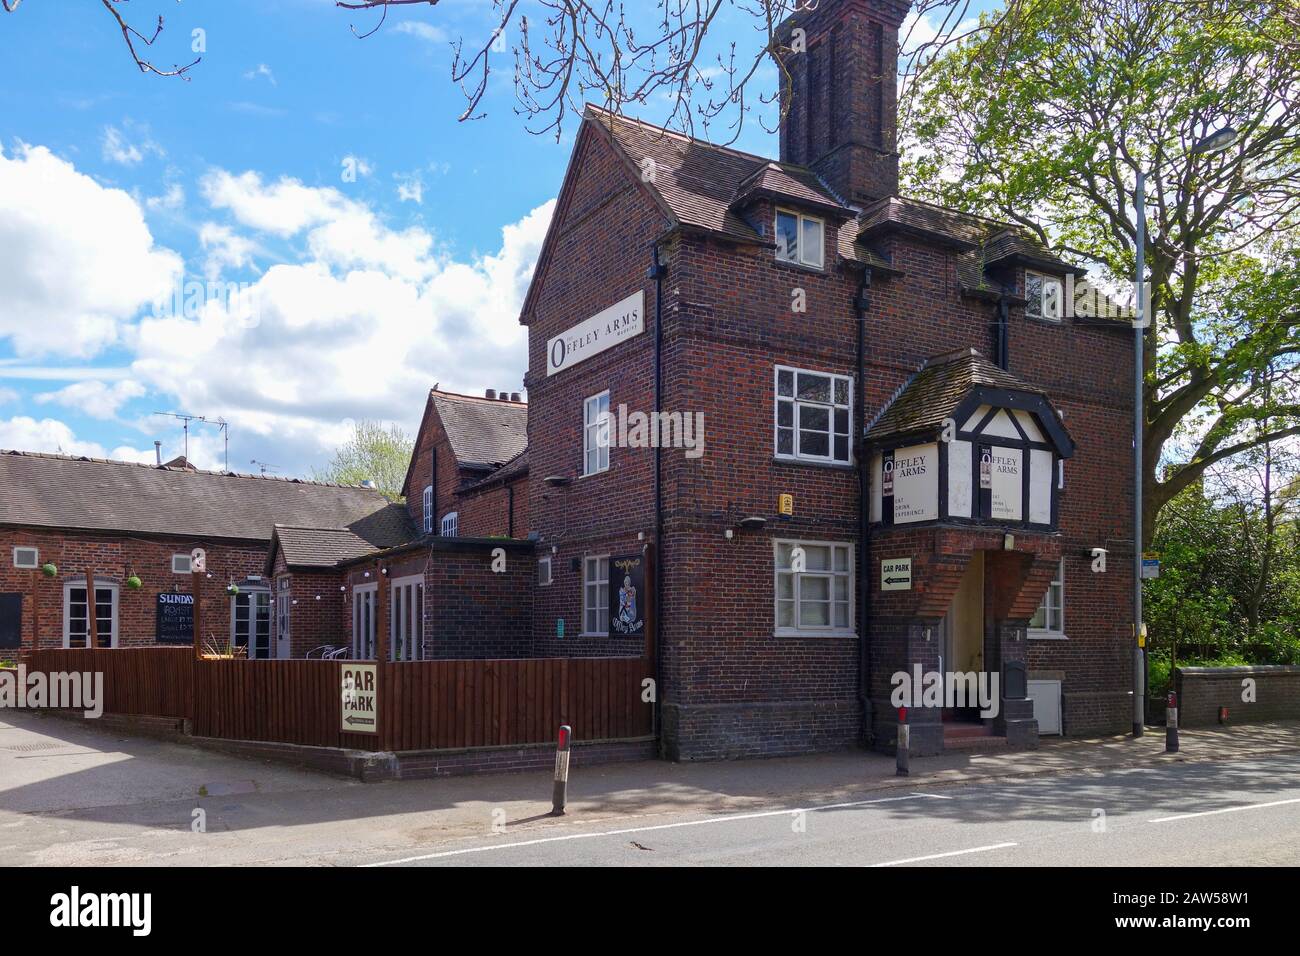 The Offley Arms est un pub historique, ou une maison publique à Madeley, Staffordshire, Angleterre, Royaume-Uni Banque D'Images